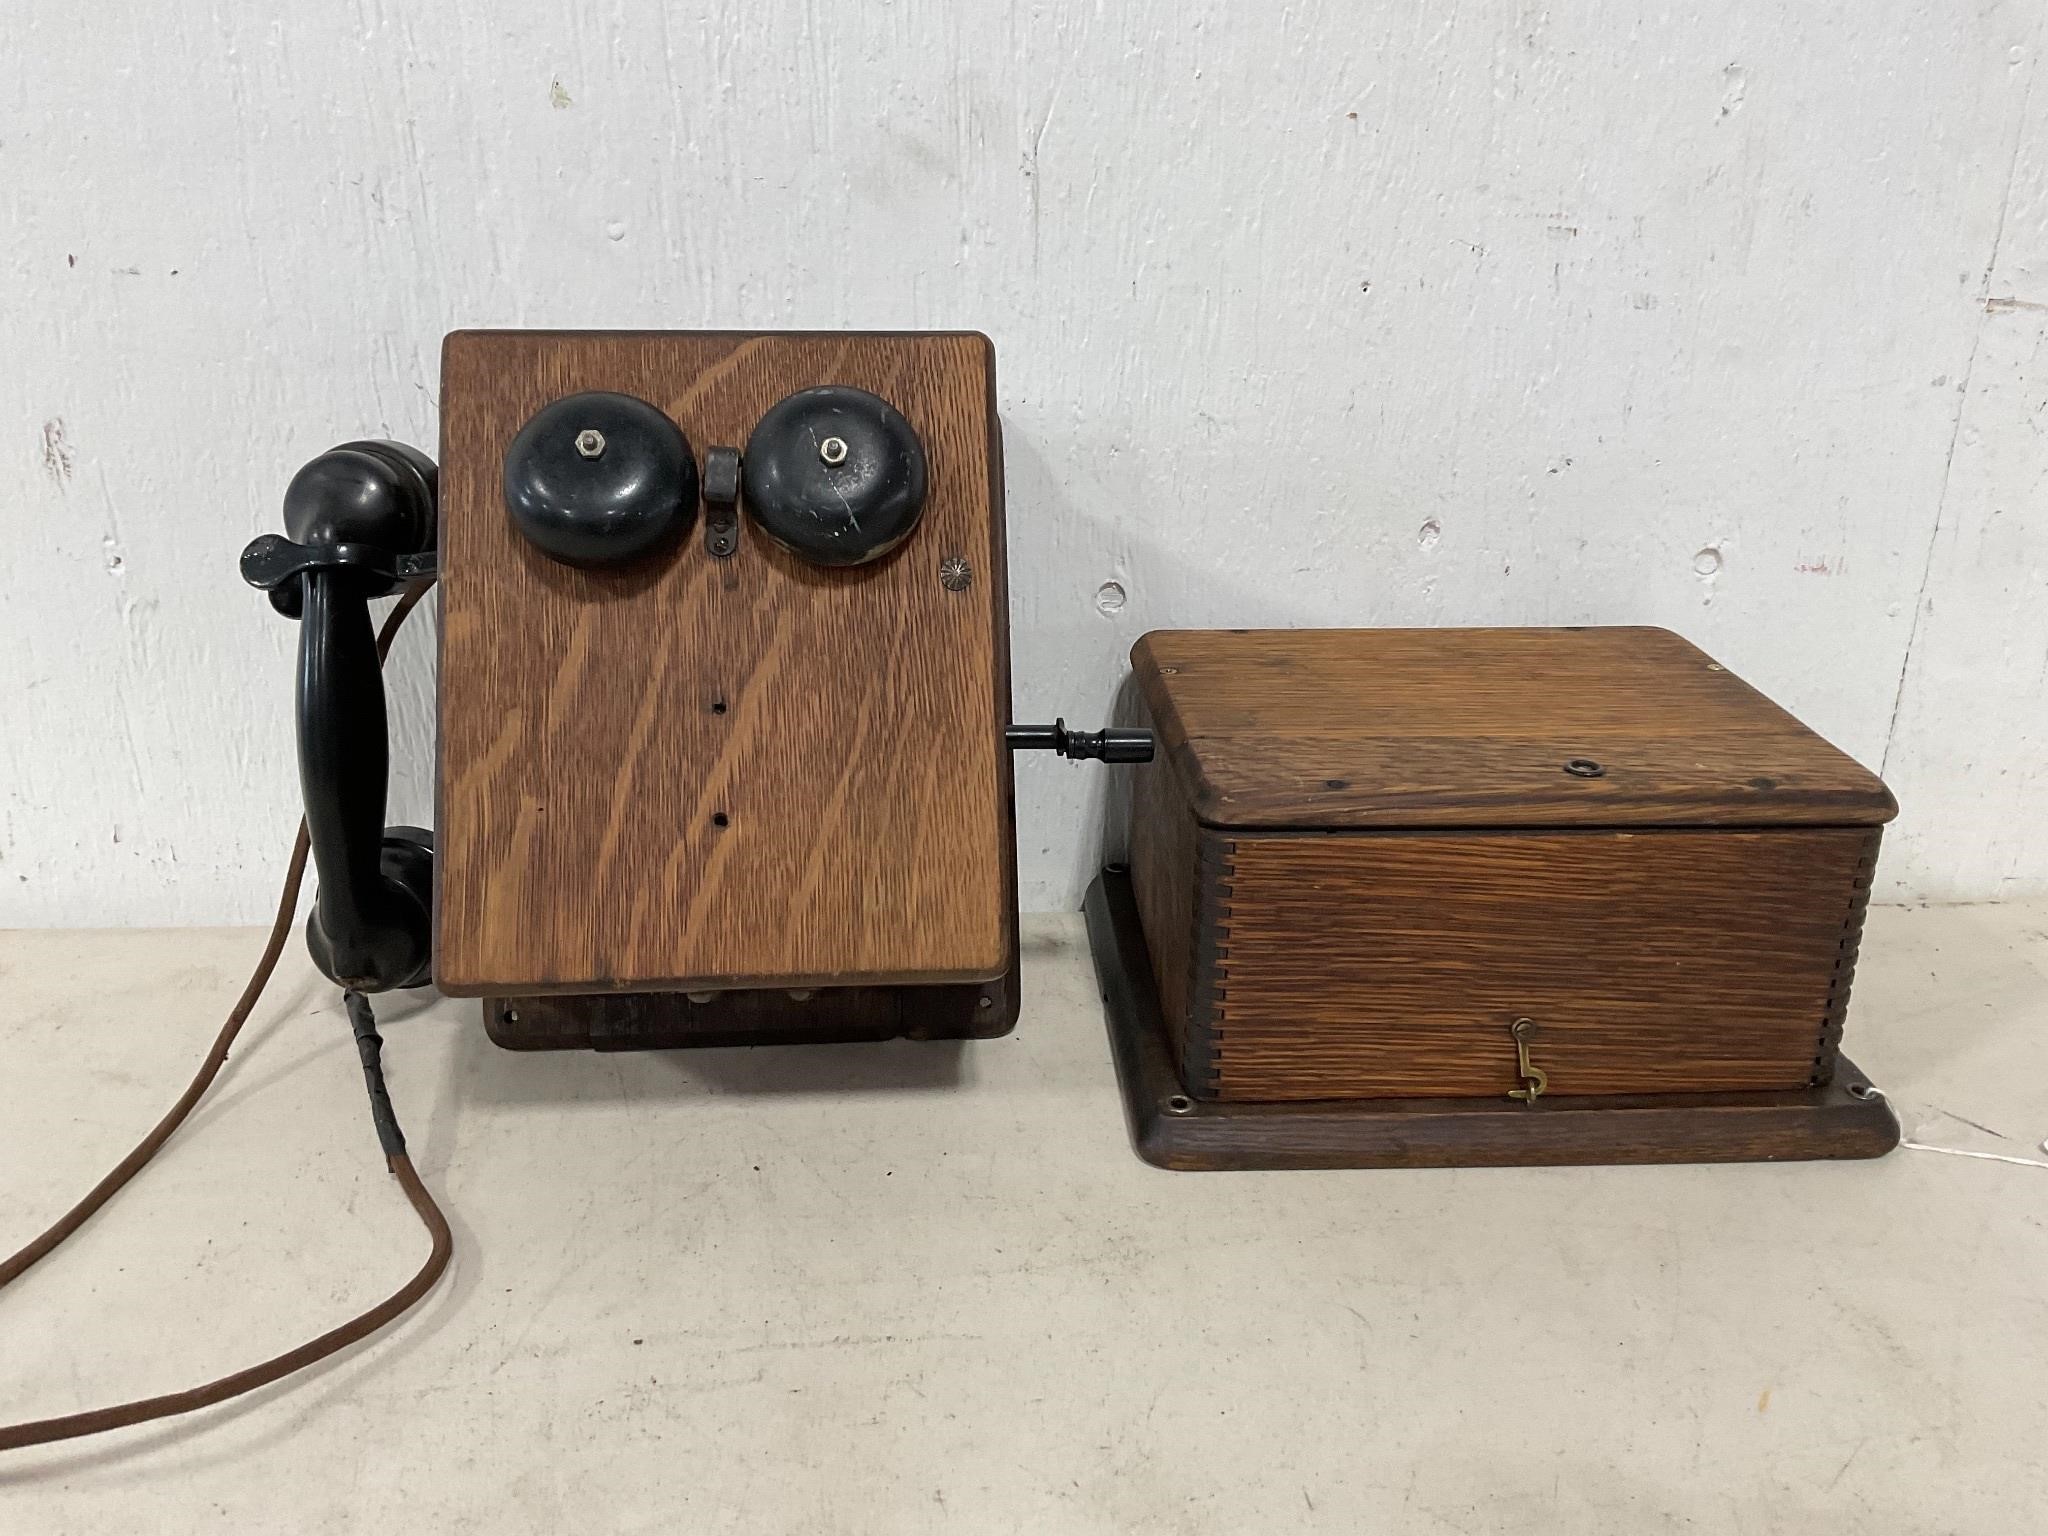 Antique Phone Box & More